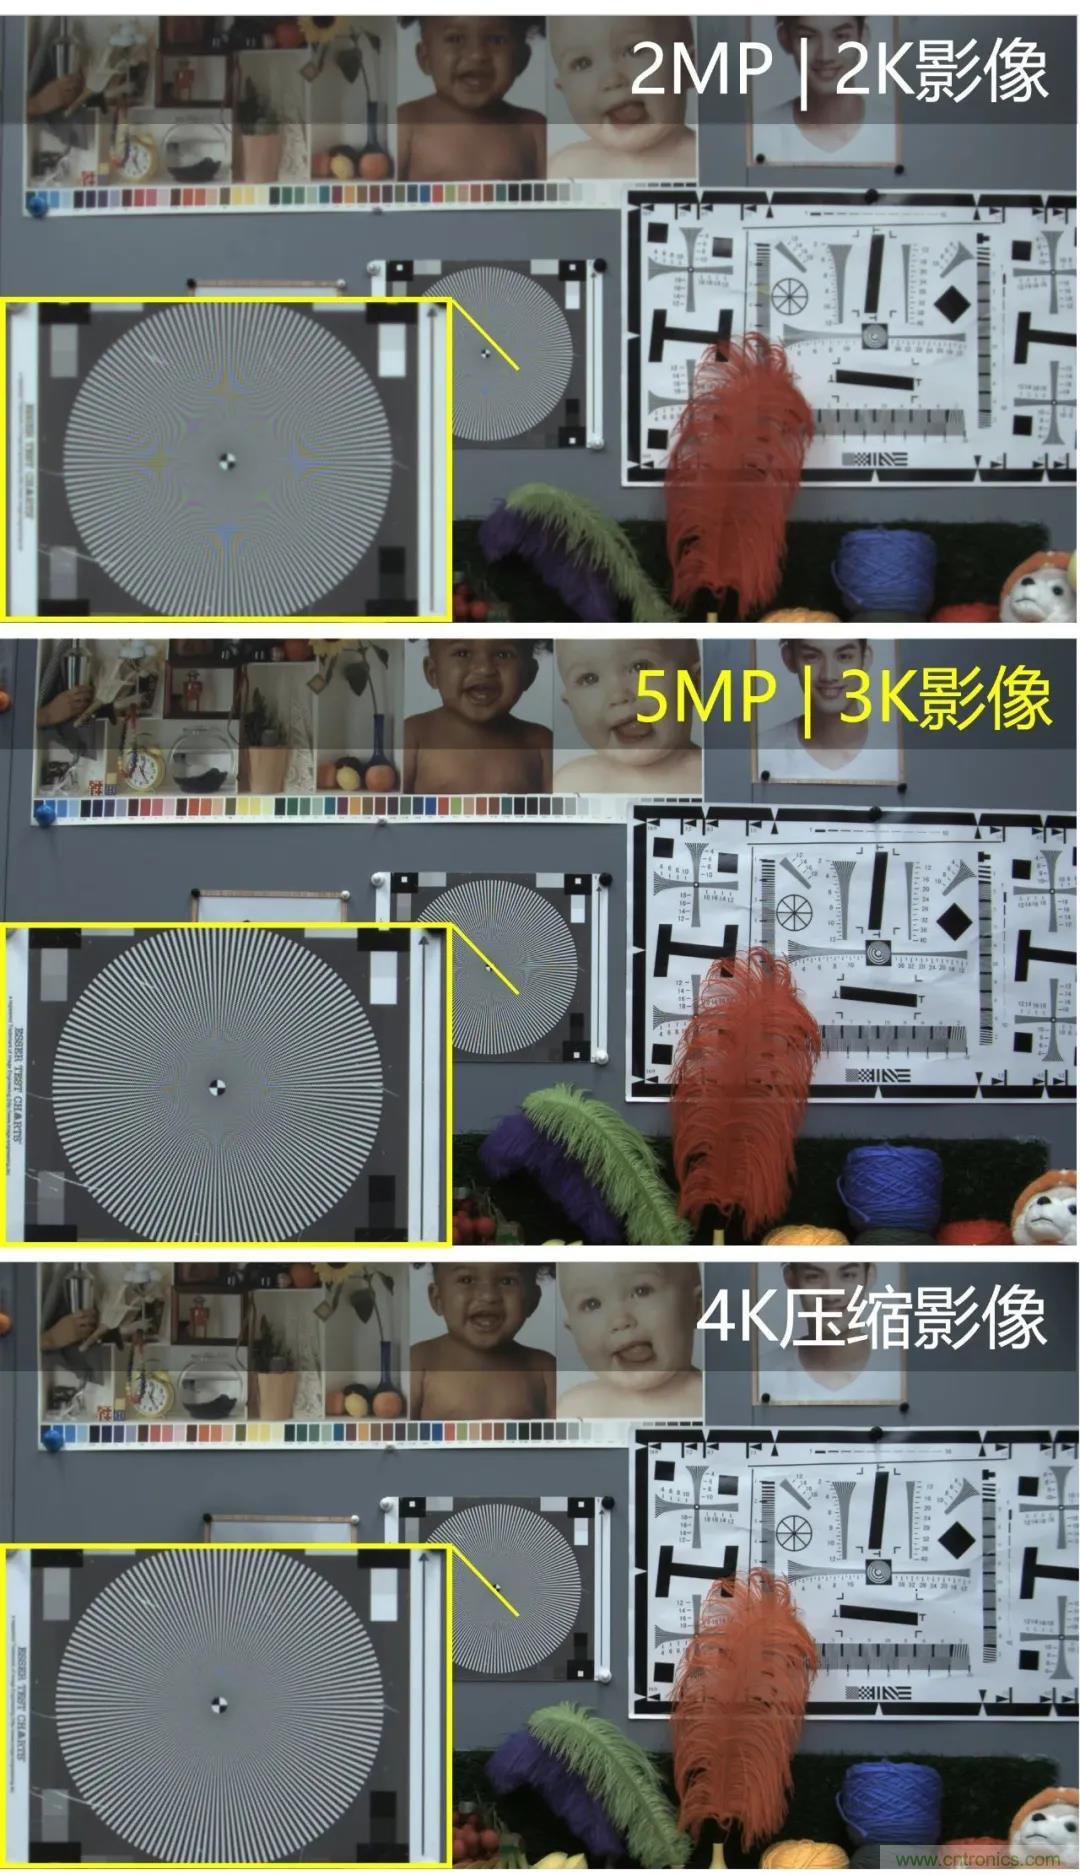 思特威全新推出3K级图像传感器产品系列SC500AI与SC501AI